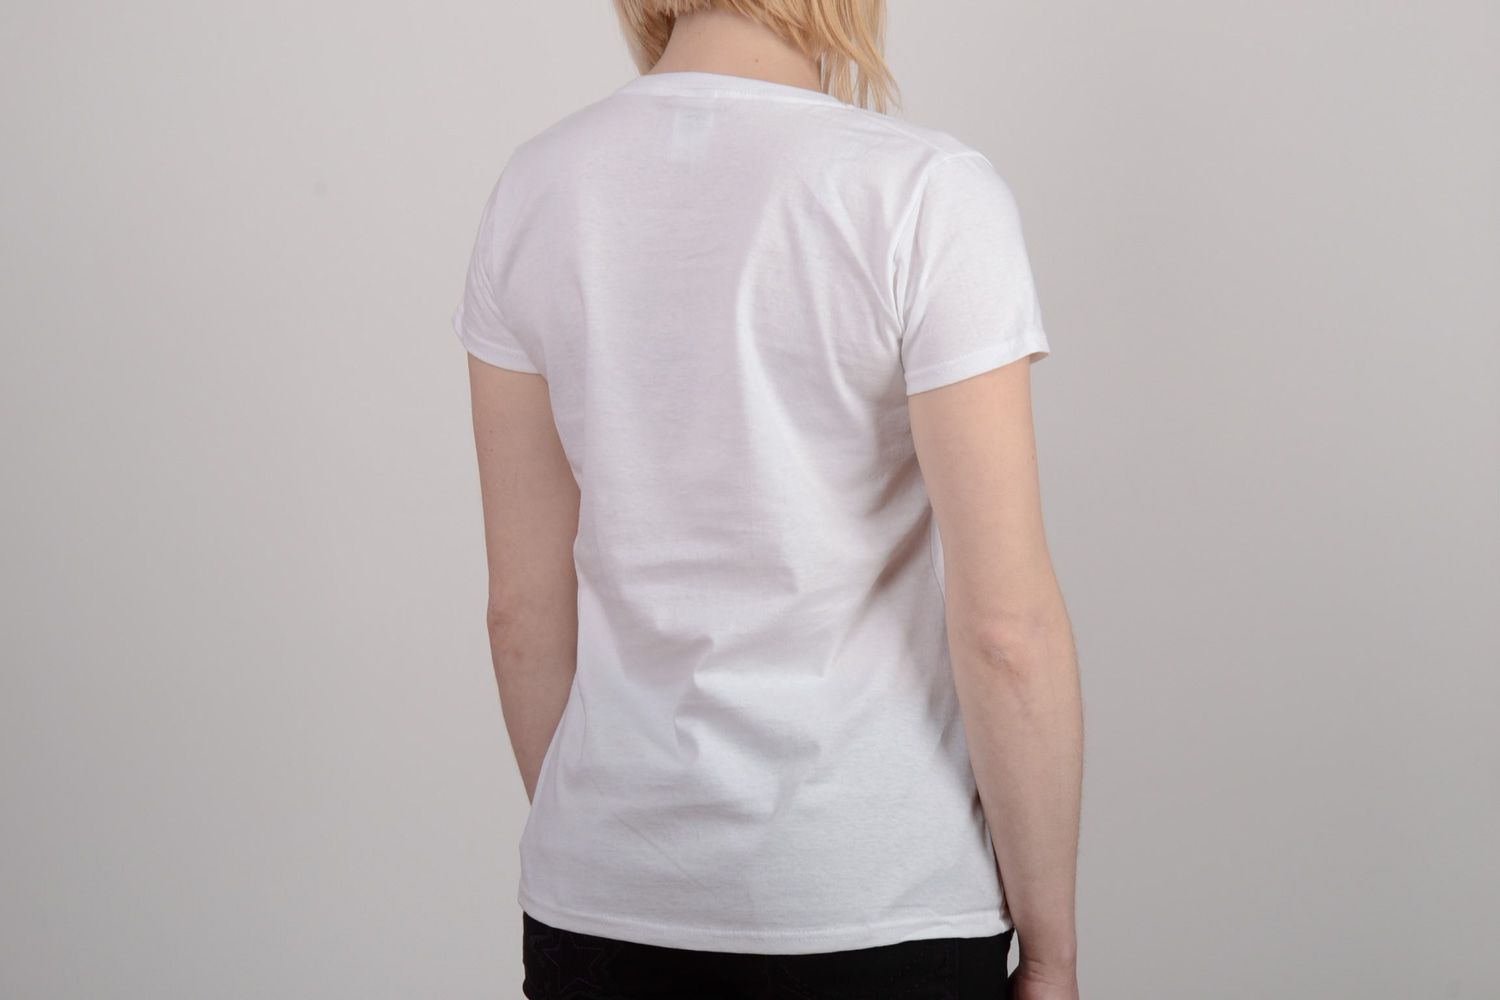 Camiseta original estampada personalizada de algodón hecha a mano decorada foto 5